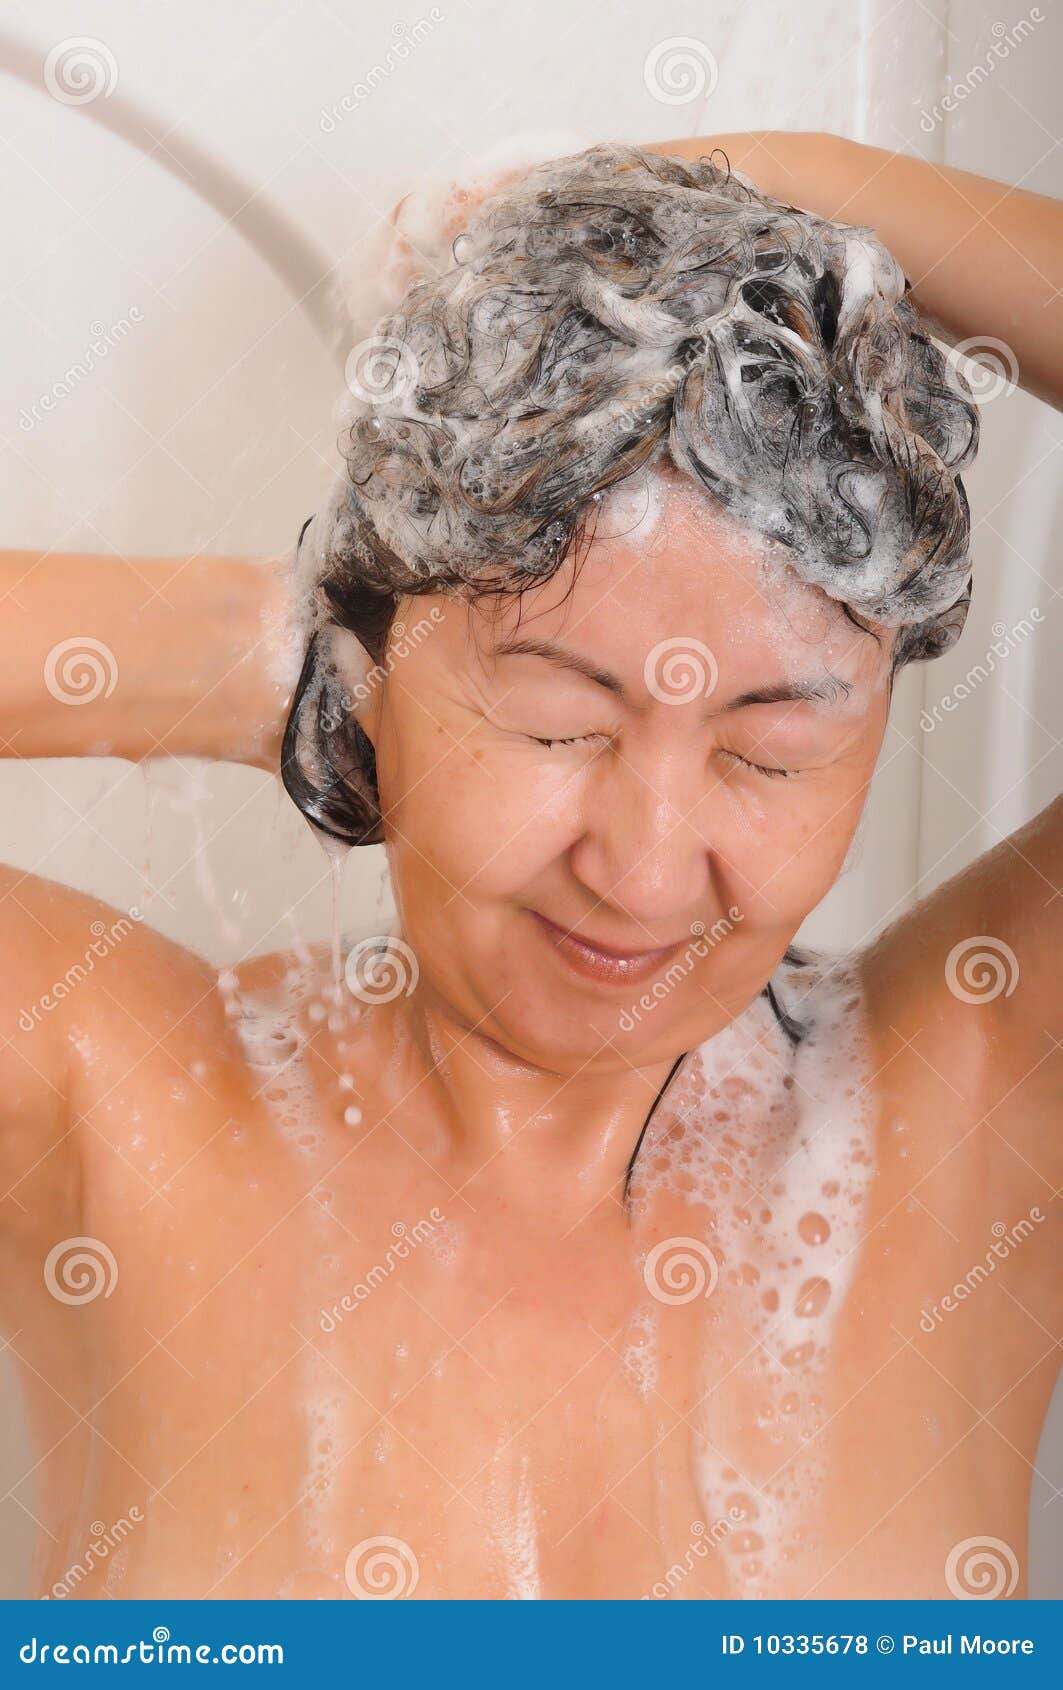 Asian Women In Shower 89